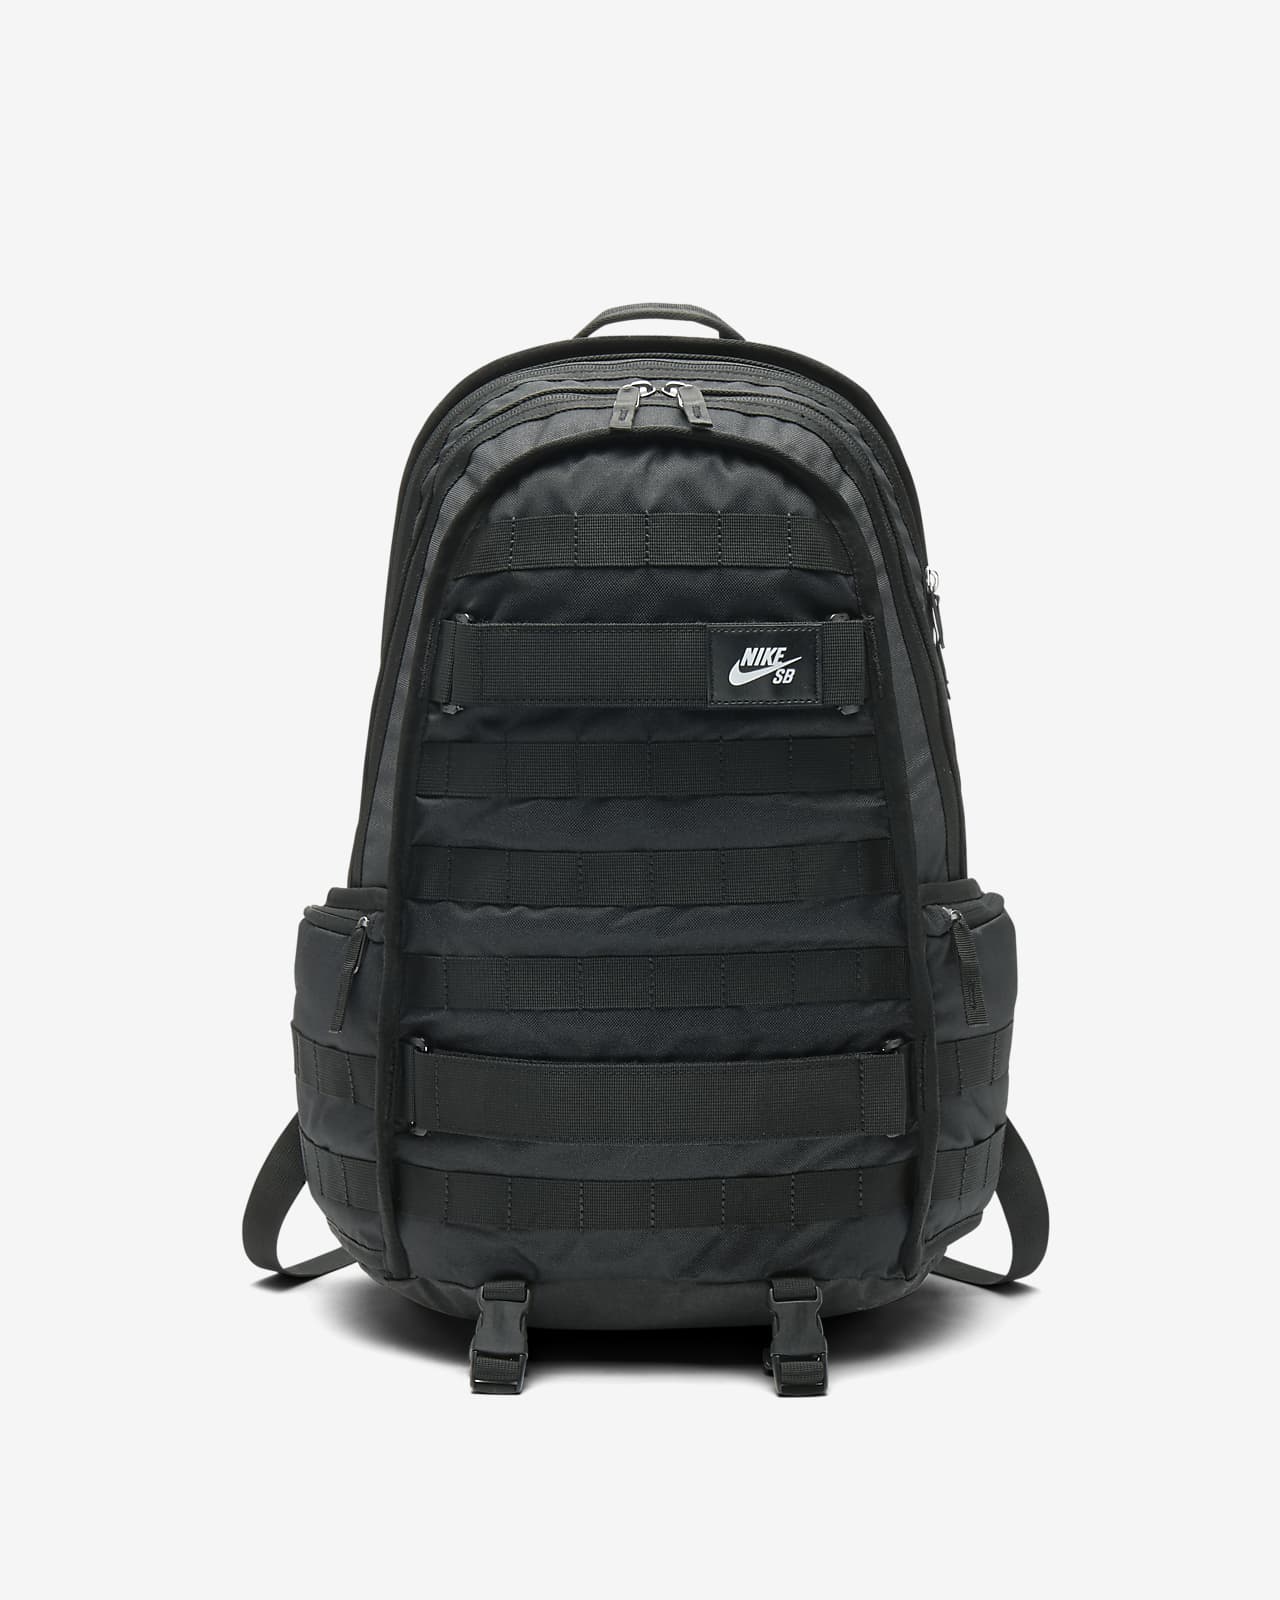 nike rpm backpack sale 